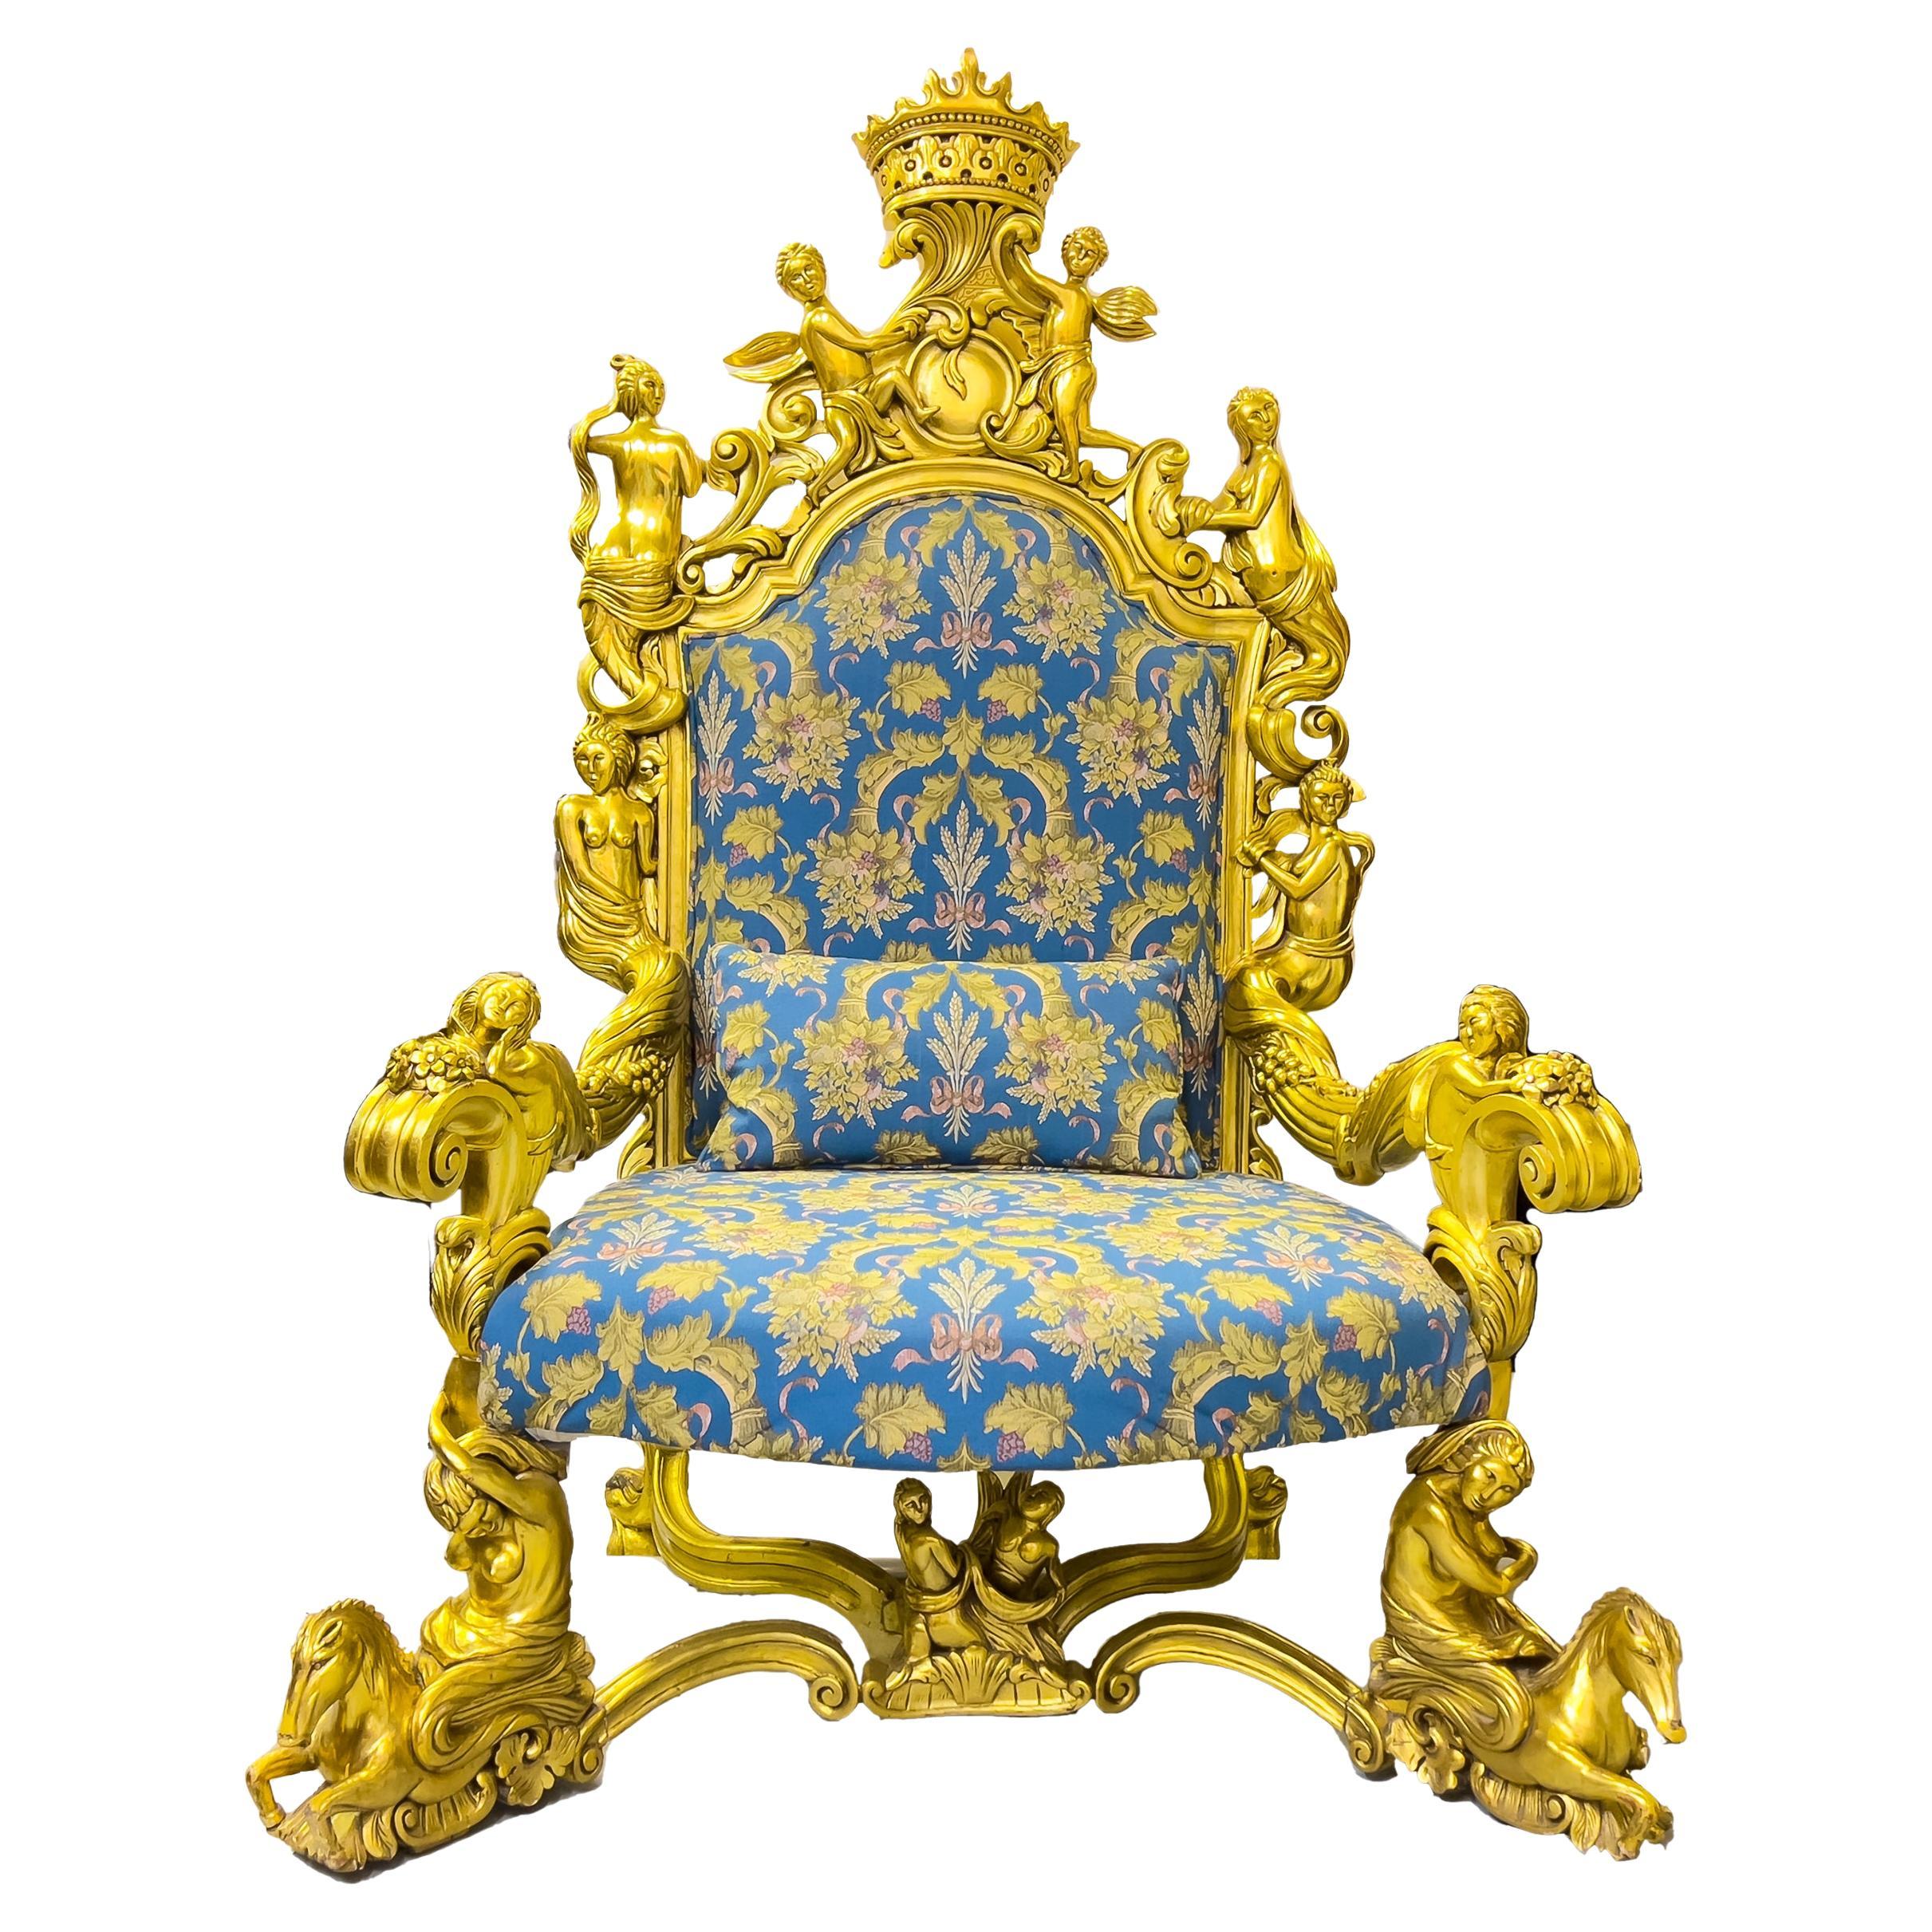 Chaise unique avec grand fauteuil en bois sculpté et doré 